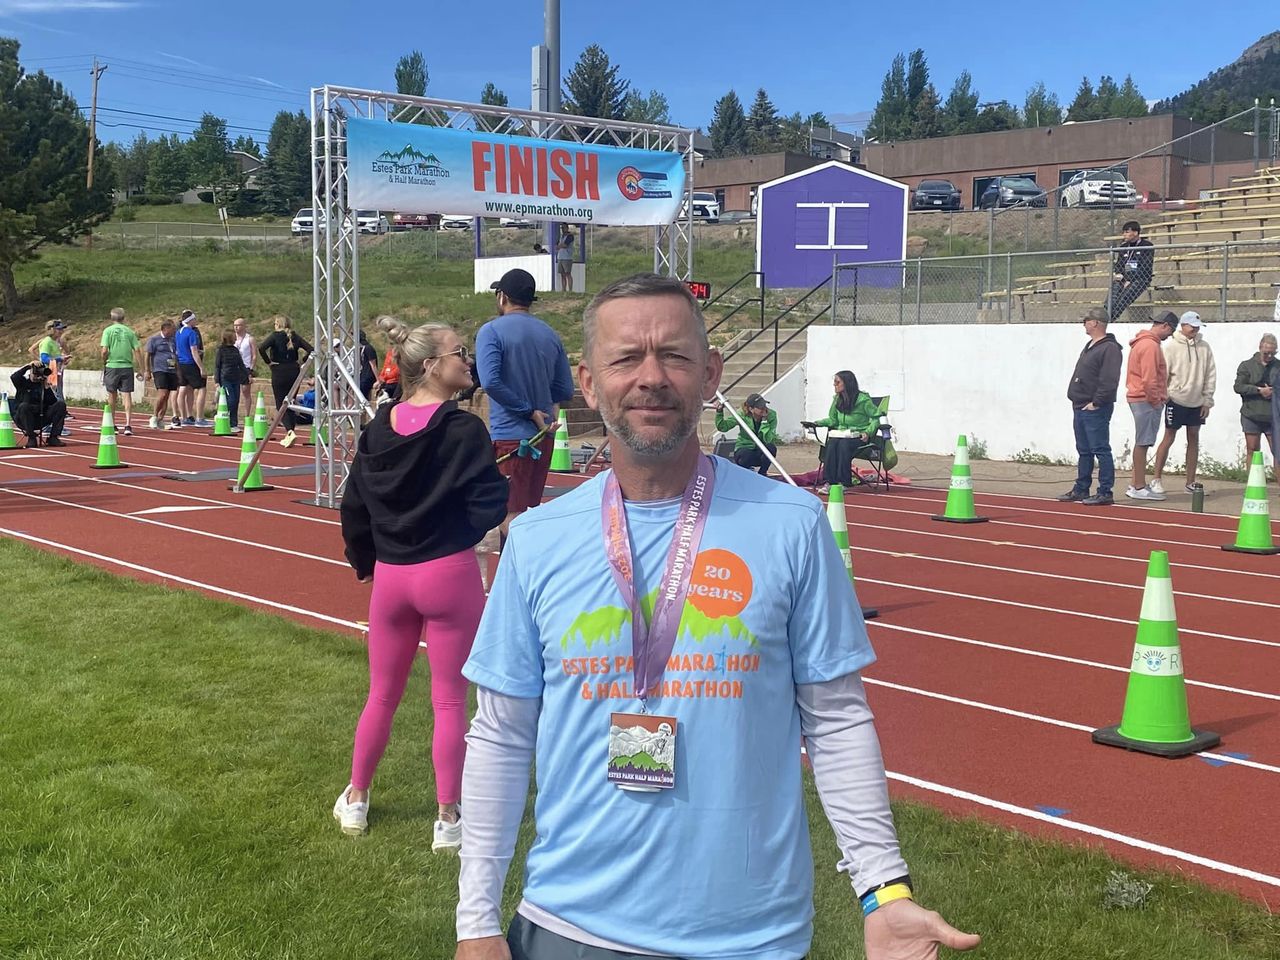 Sulphur Springs Man Runs Half-Marathon in Colorado